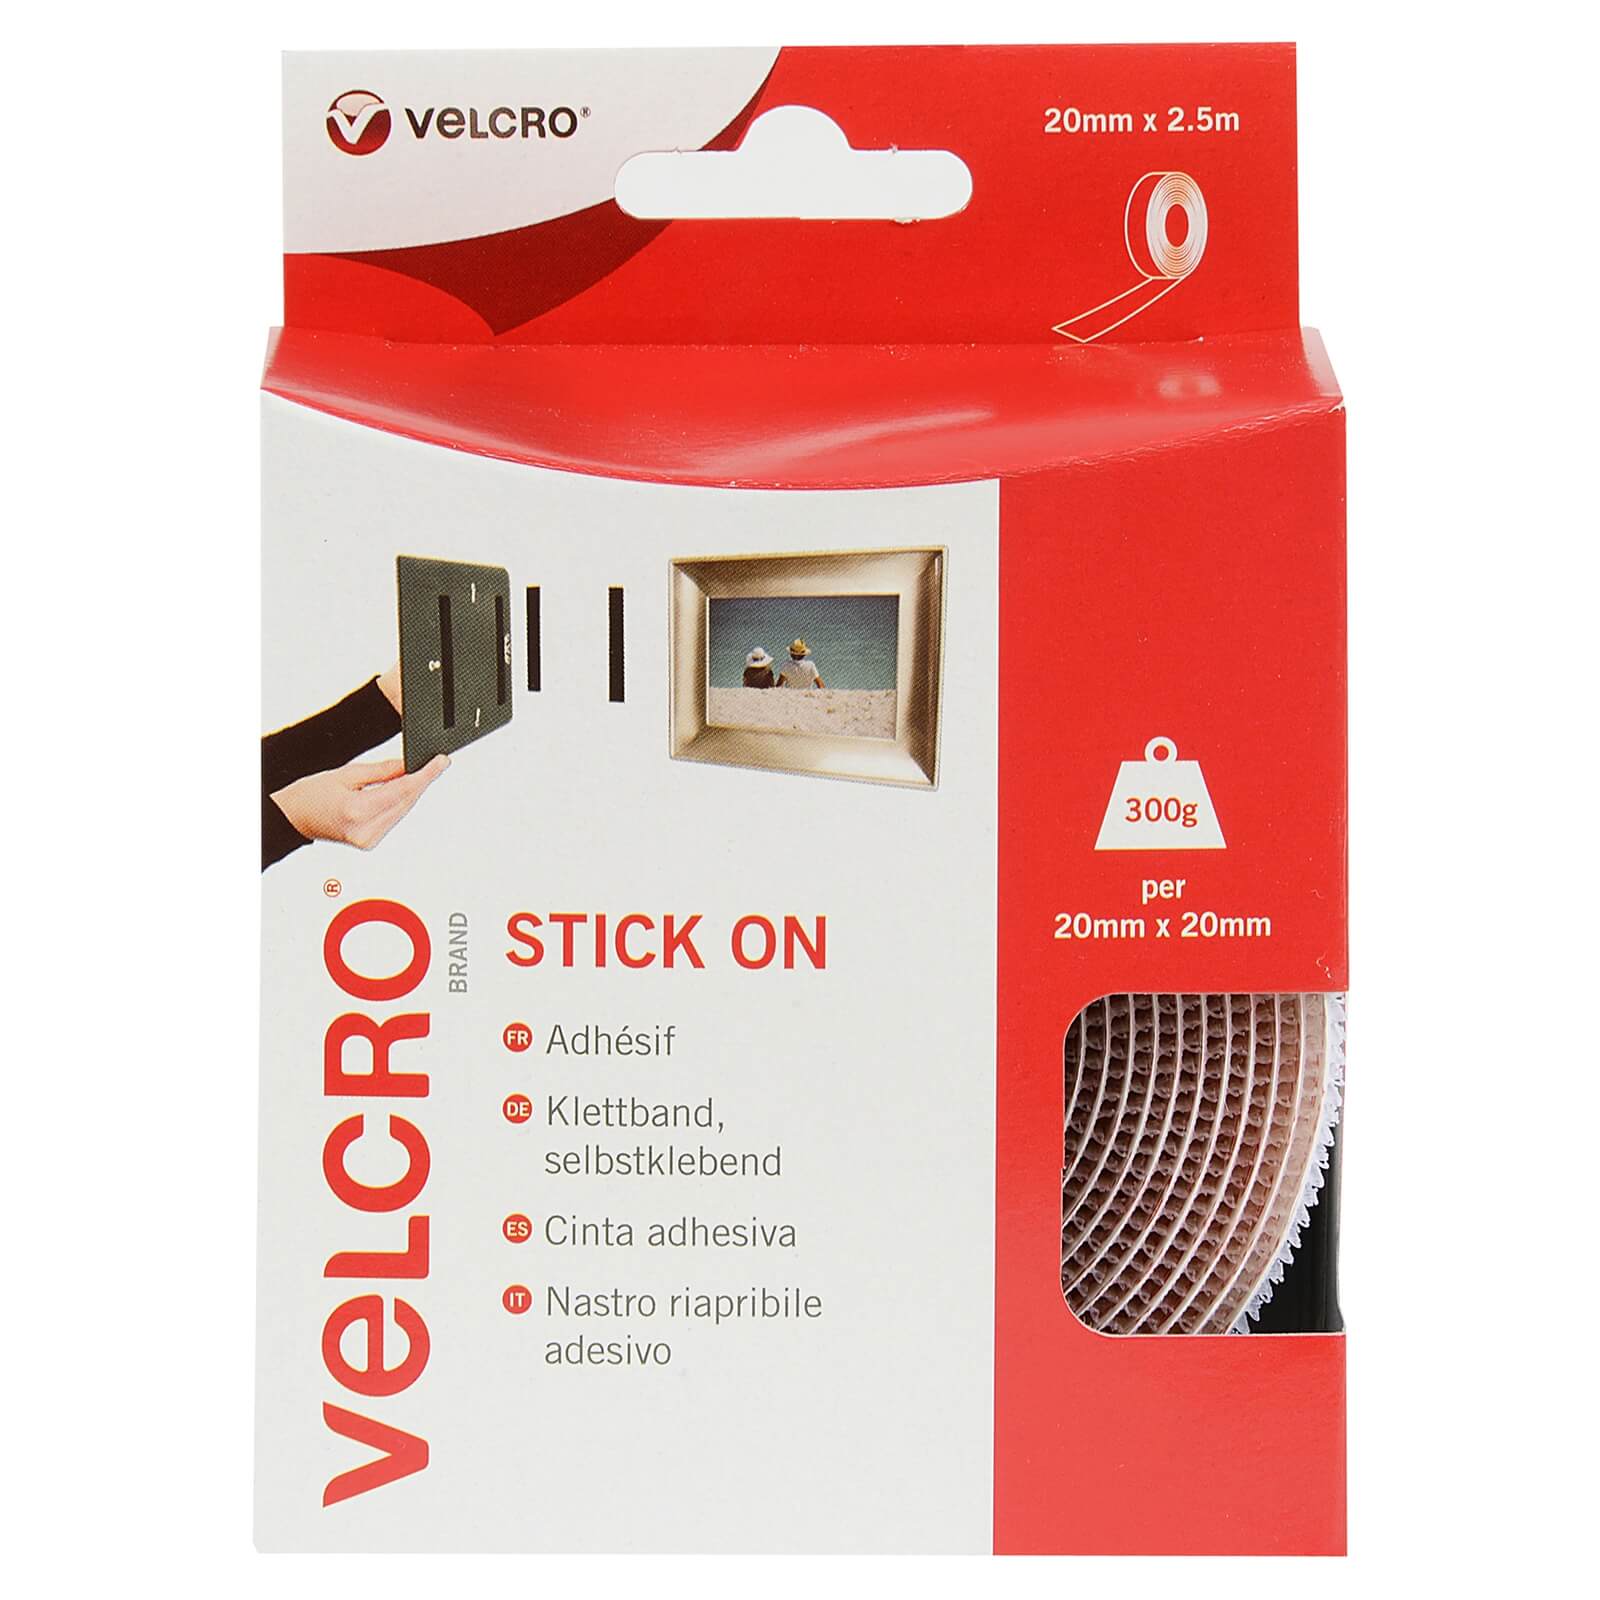 VELCRO Stick On Tape 20mm x 2.5m